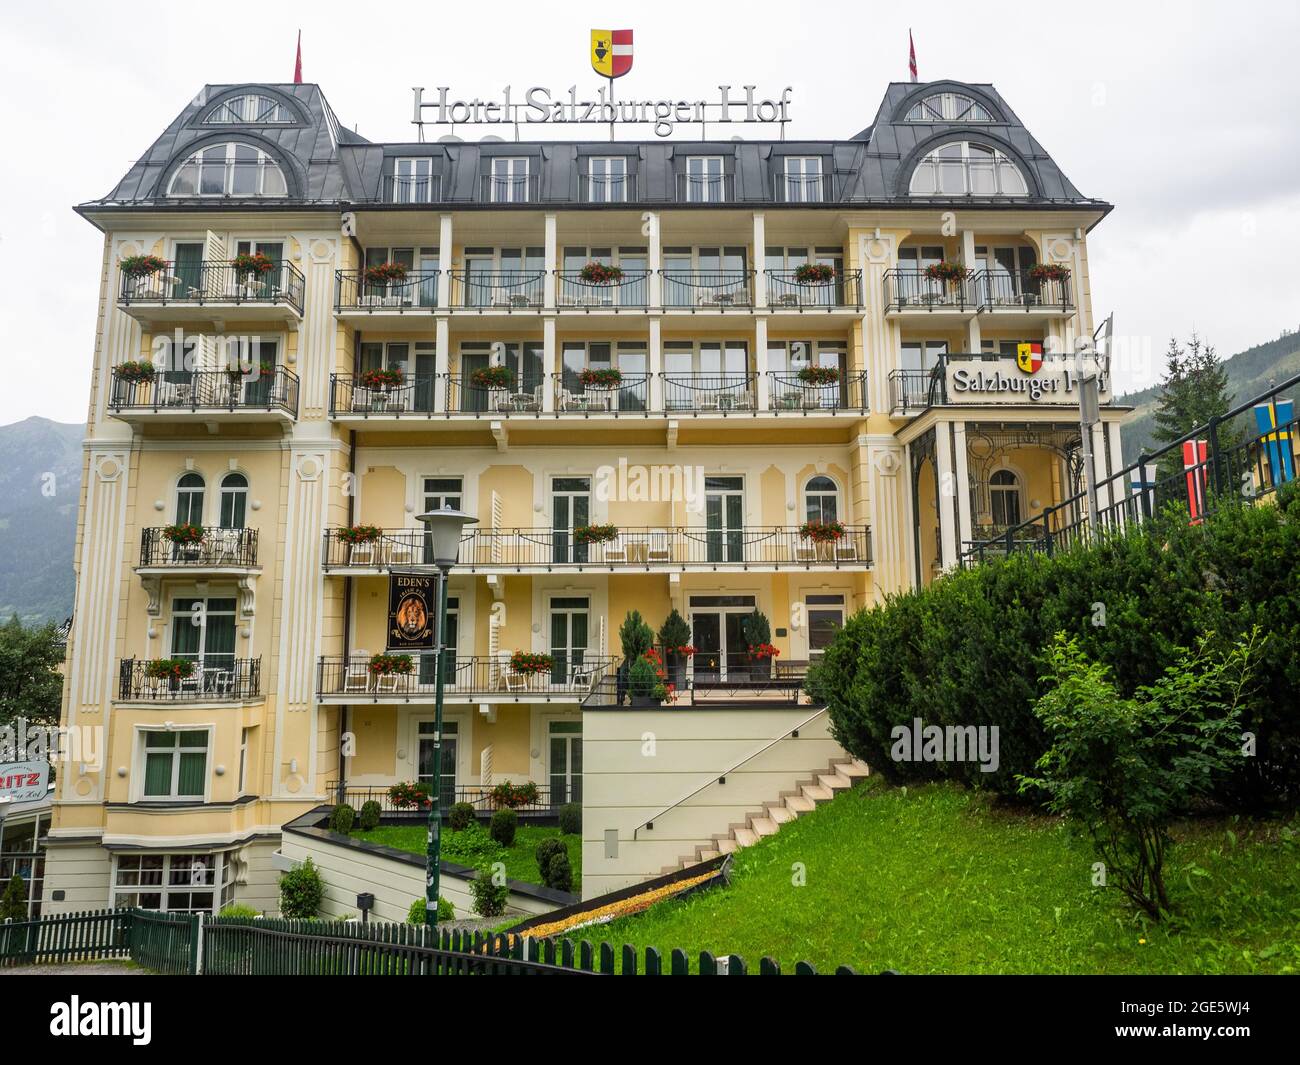 Hotel Salzburger Hof, Bad Gastein, Salzburger Land, Austria Stock Photo